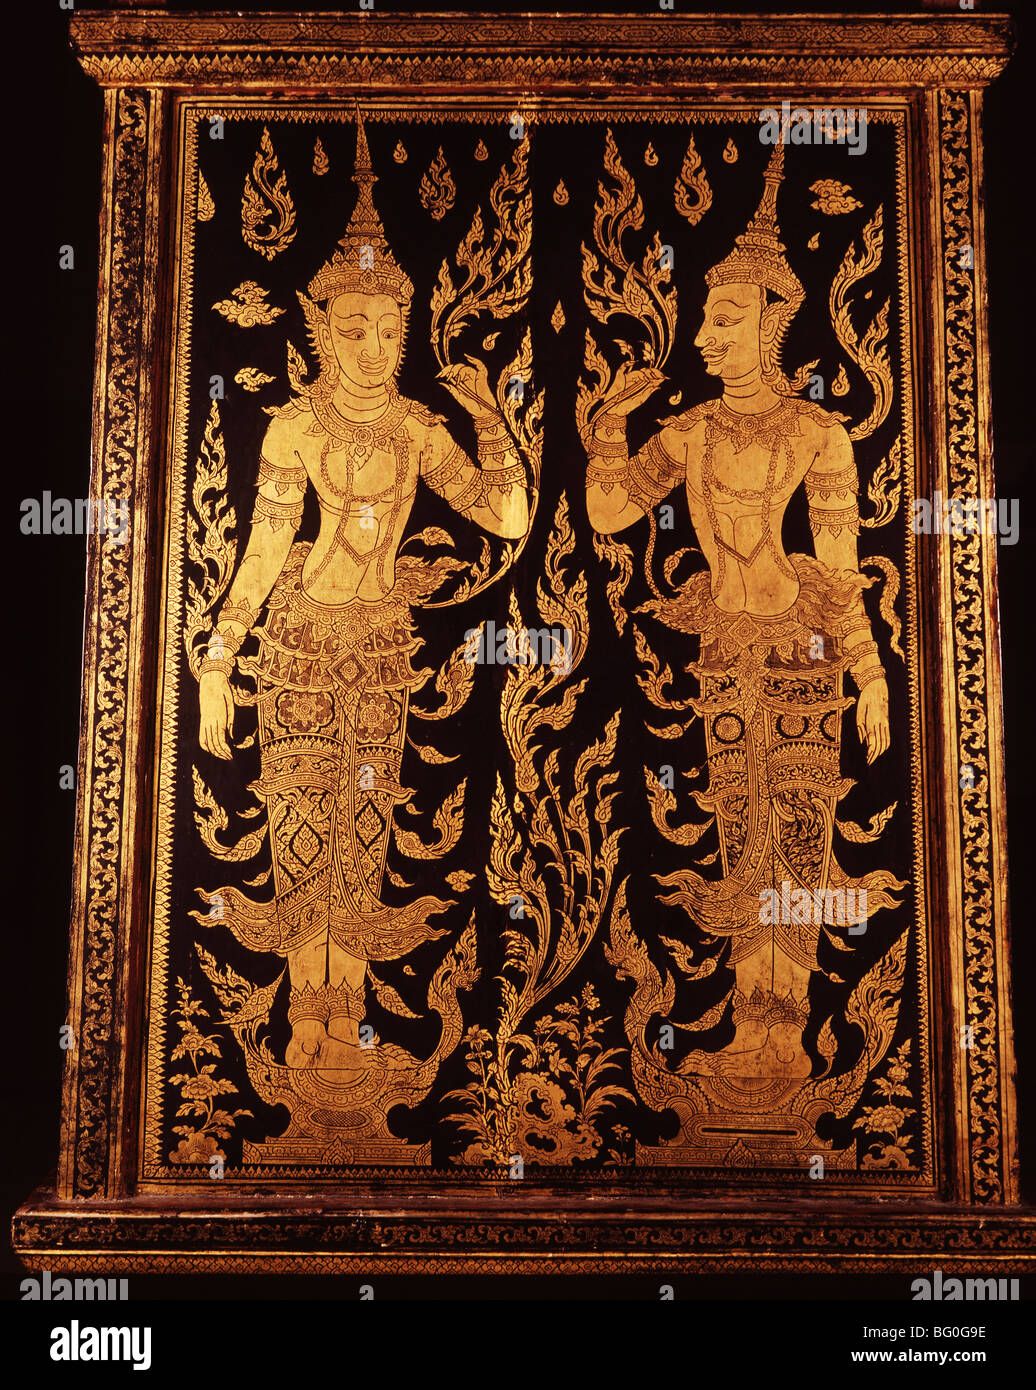 Dettaglio del Libro Cabinet, Thailandia, Sud-est asiatico, in Asia Foto Stock